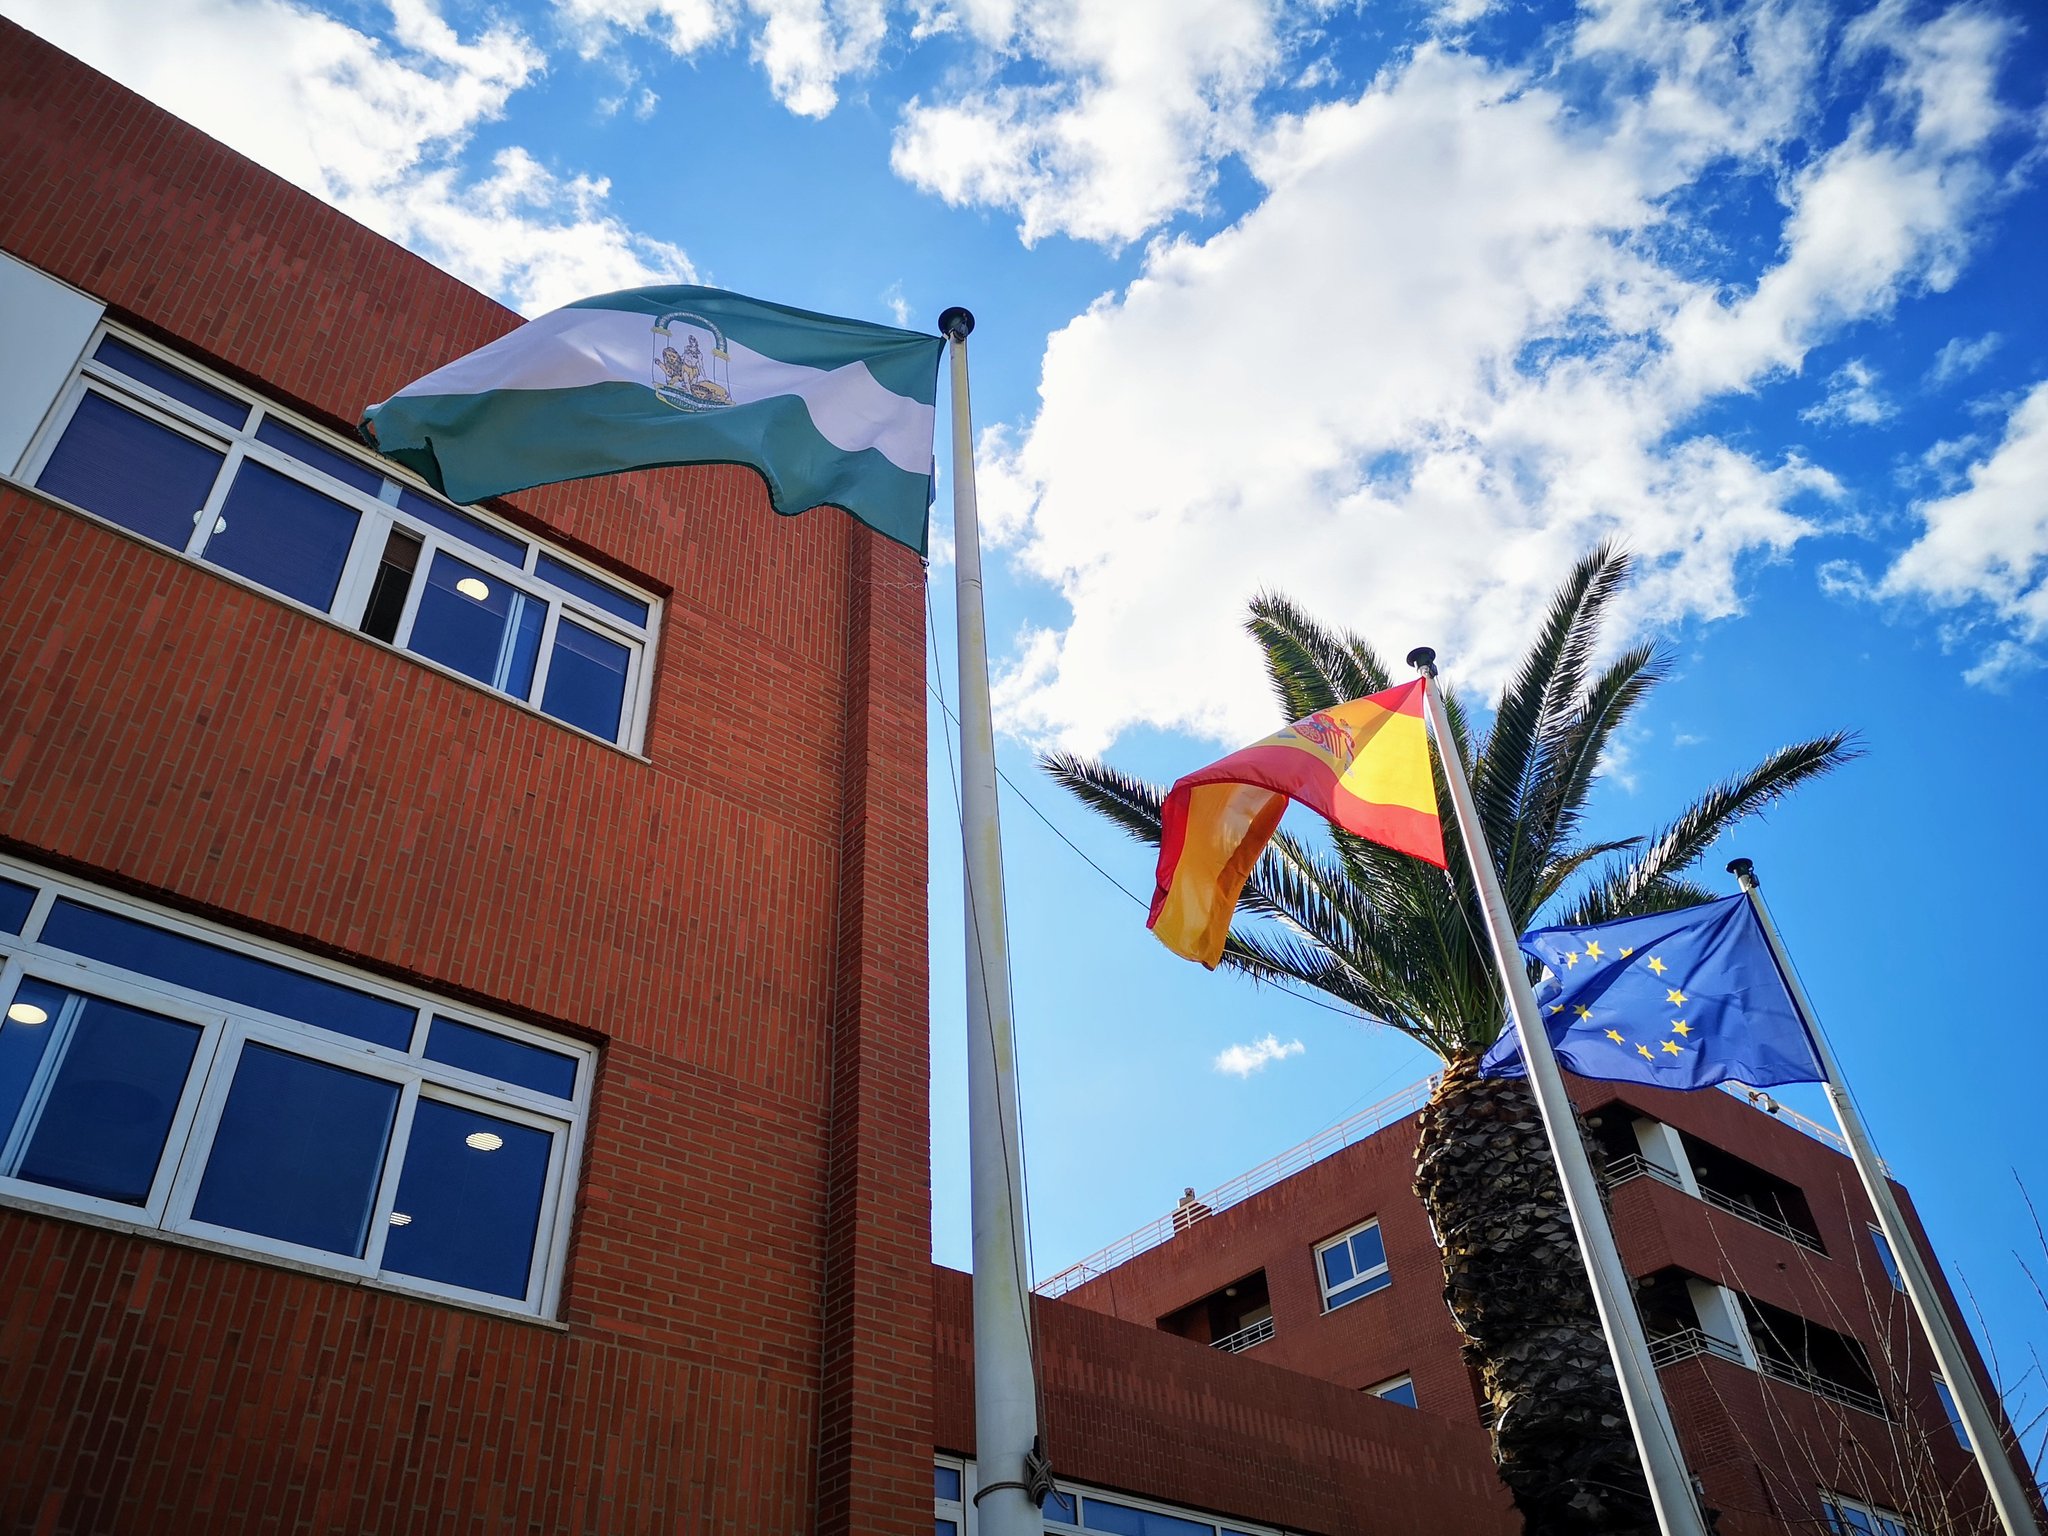 Los puertos de la región se suman a la felicitación por el Día de Andalucía